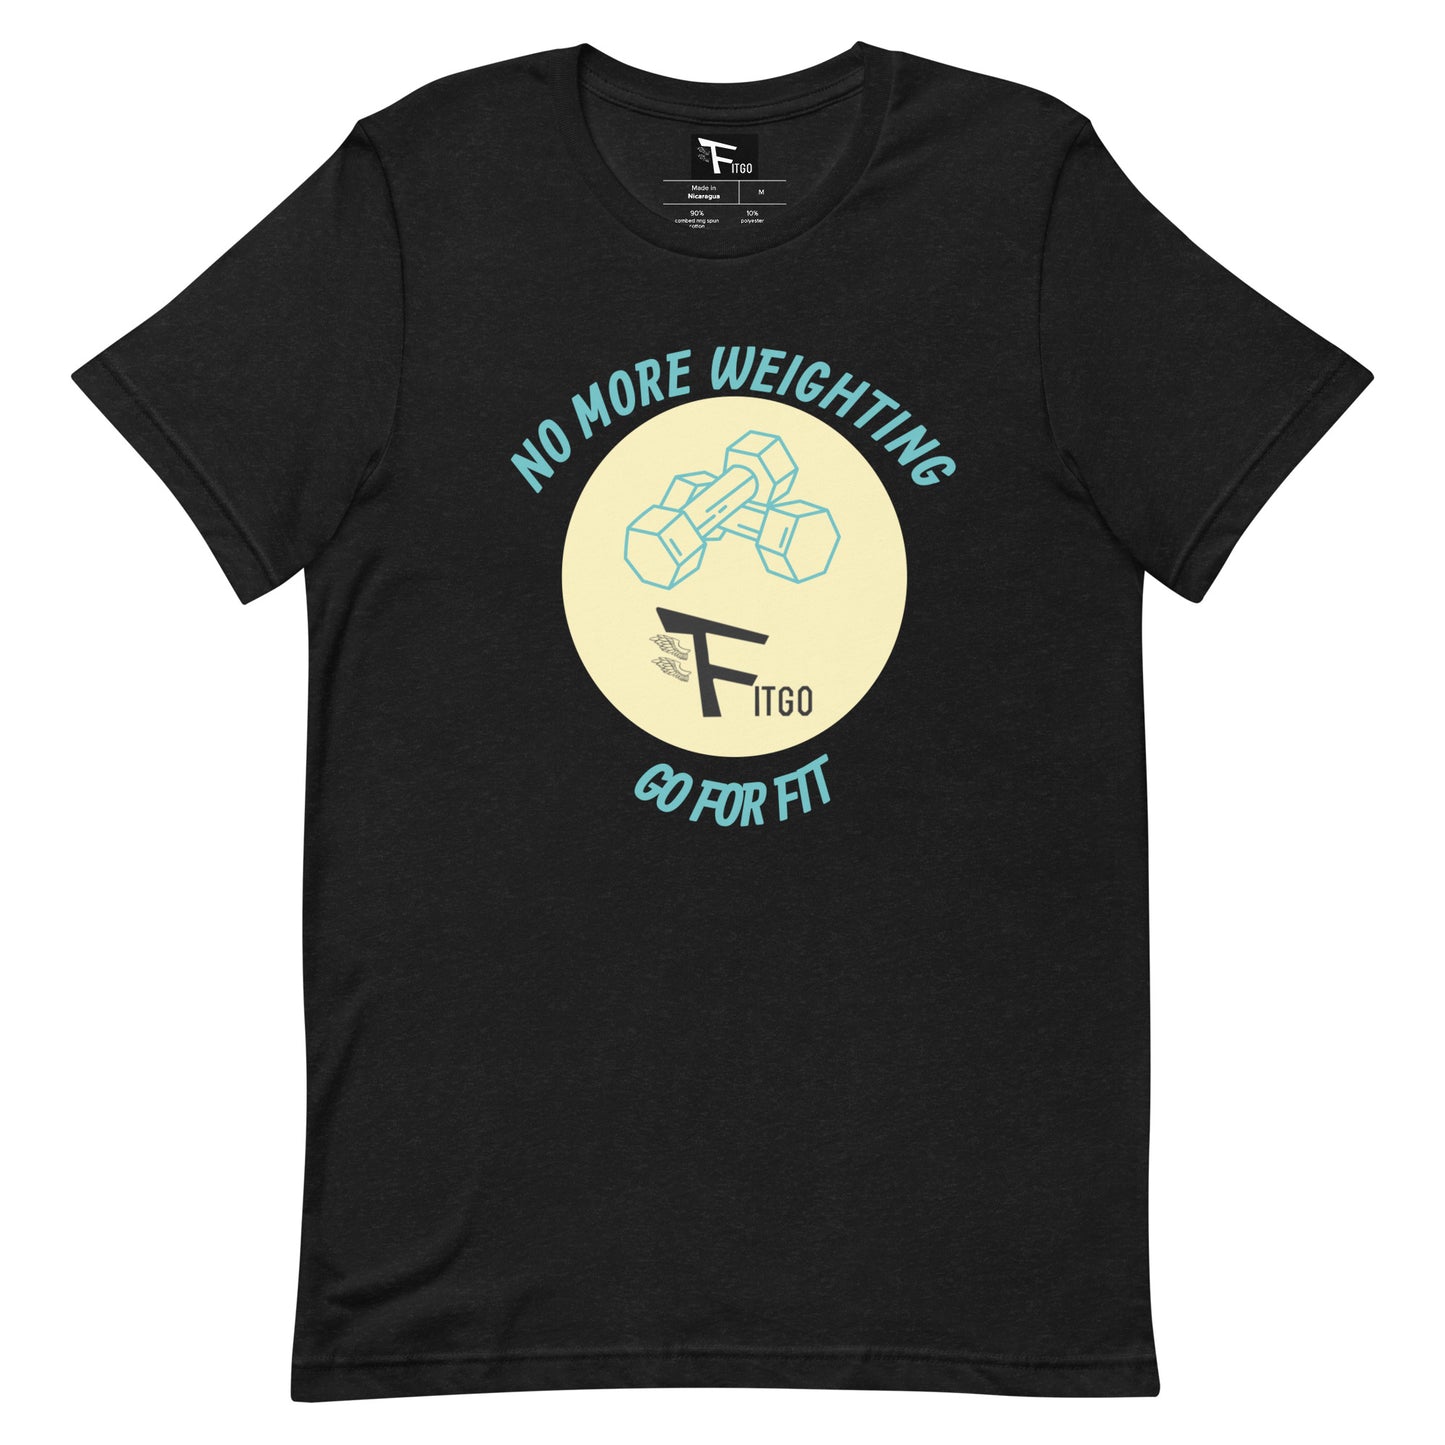 Men's Fitgo Weighting T-Shirt